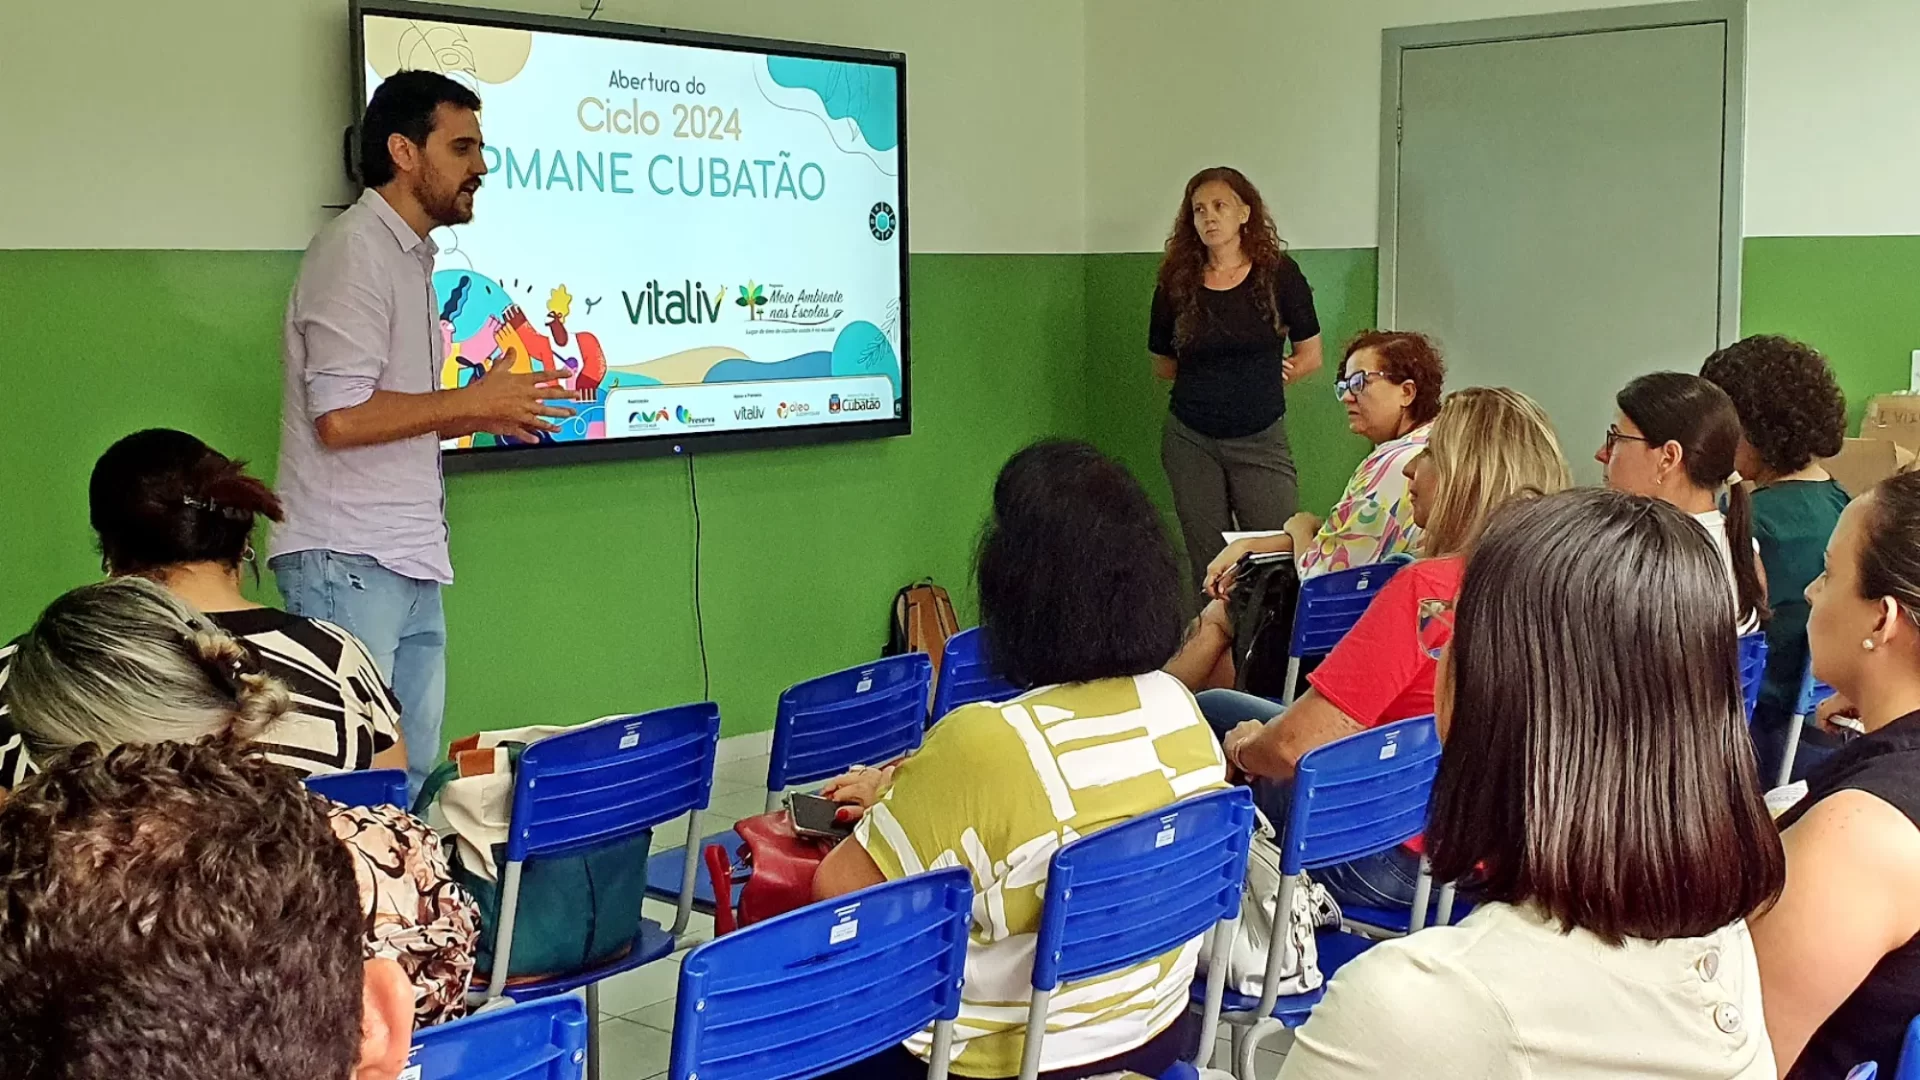 Cubatão recebe o PMANE para a abertura do ciclo 2024